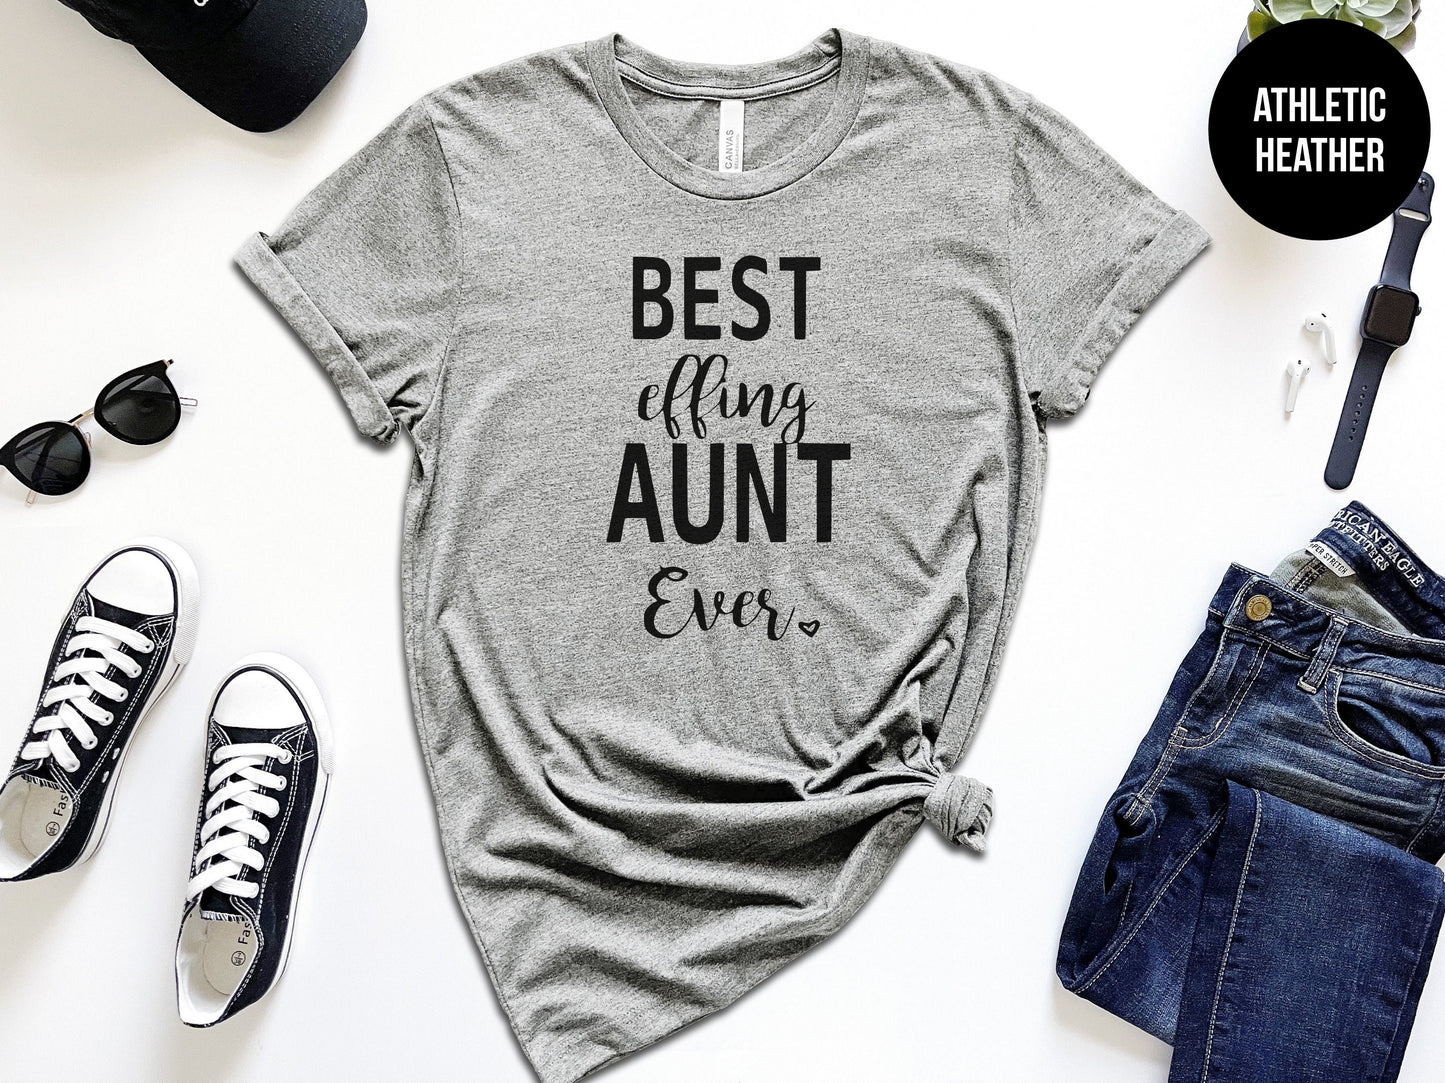 Best Effin Aunt Ever Shirt